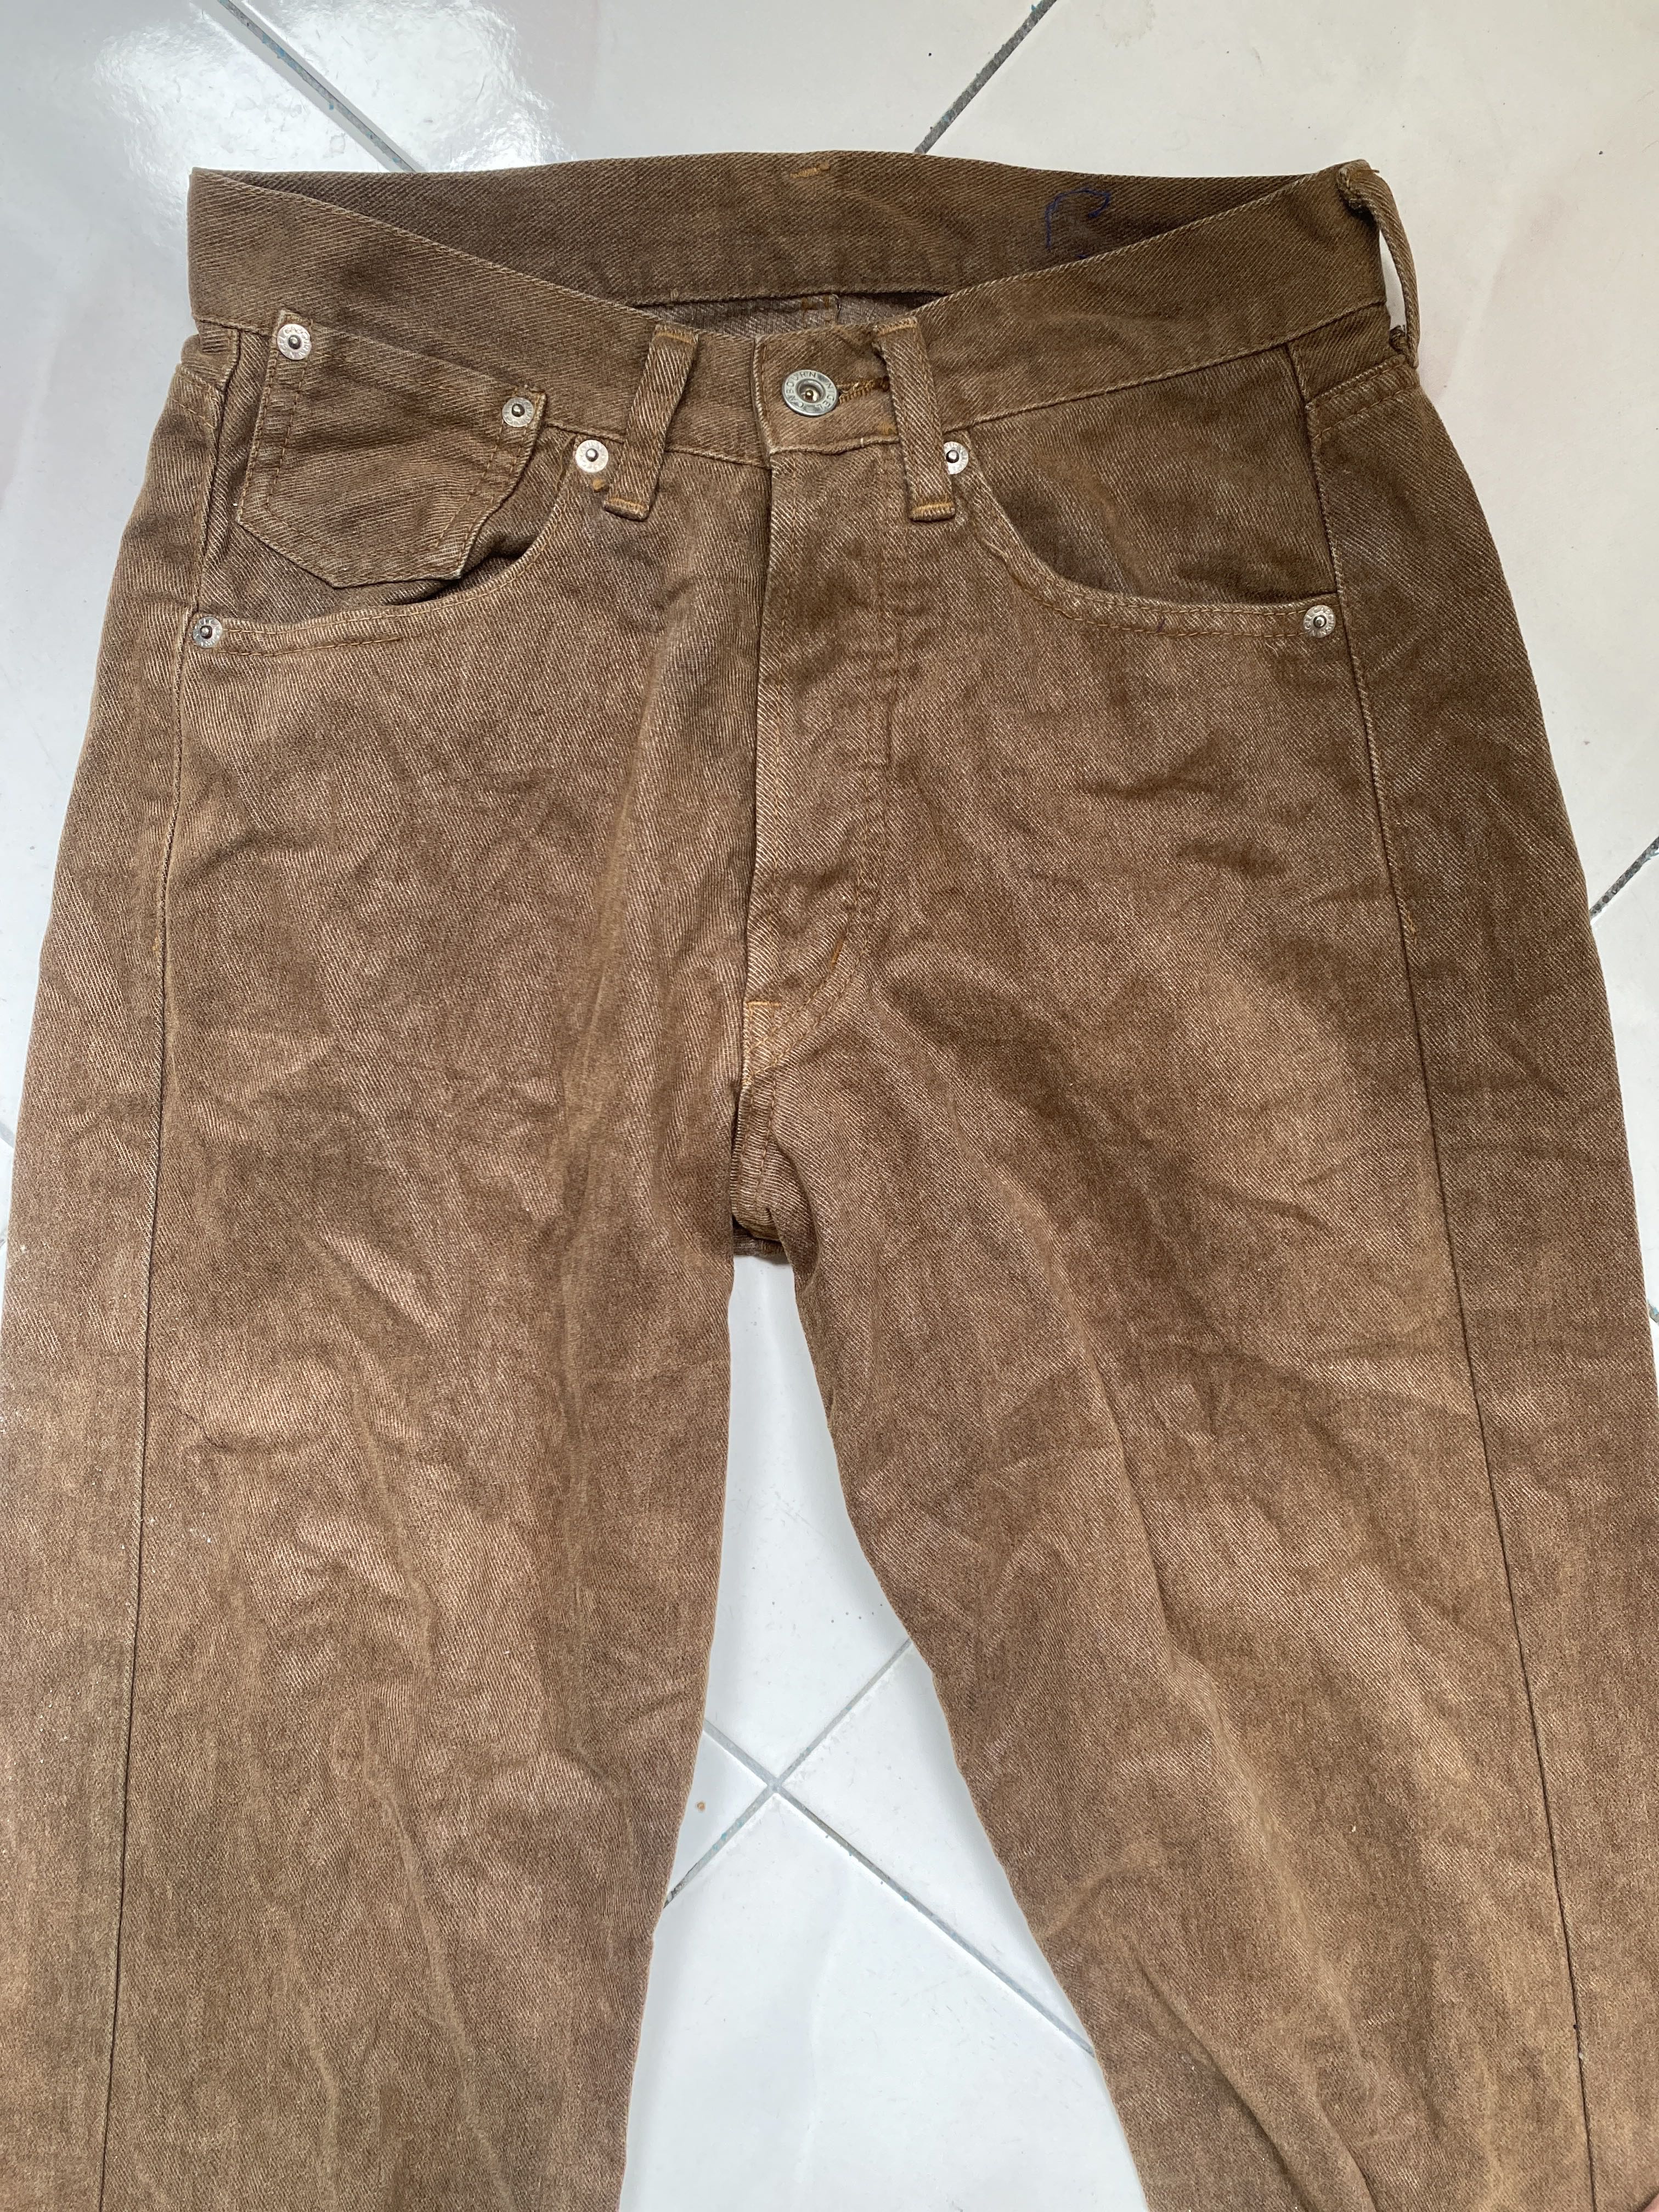 5 Pocket Jeans Denim Flare Bootcut  - 1